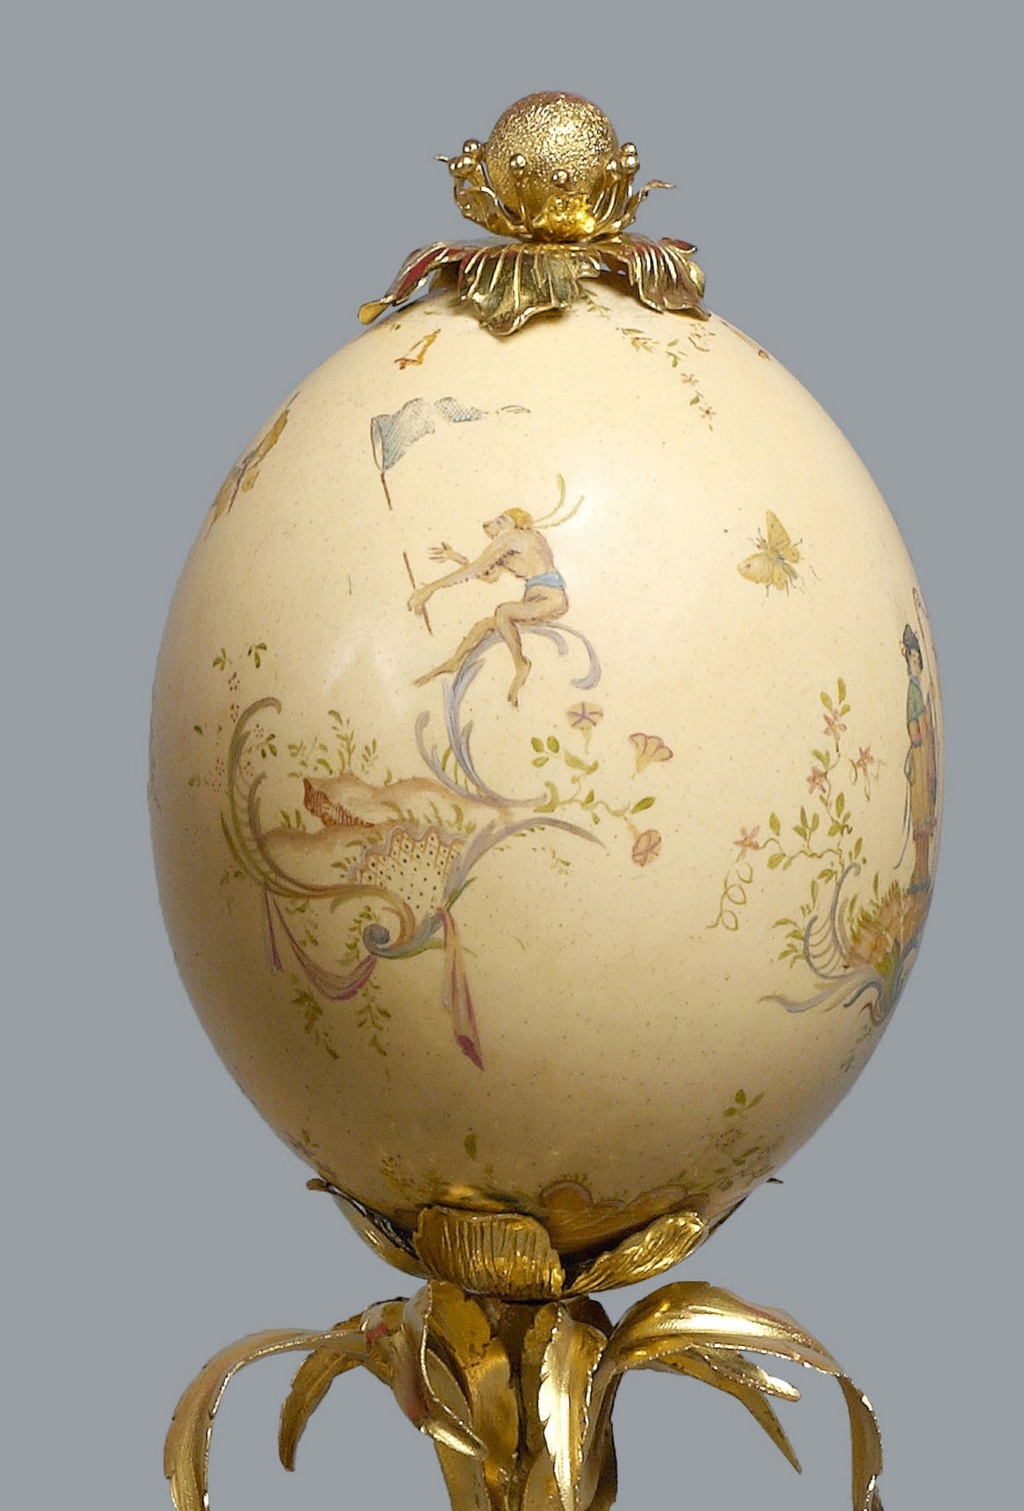 Les oeufs de Pâques et les oeufs d'Autruche peints au XVIIIe siècle 3588-110